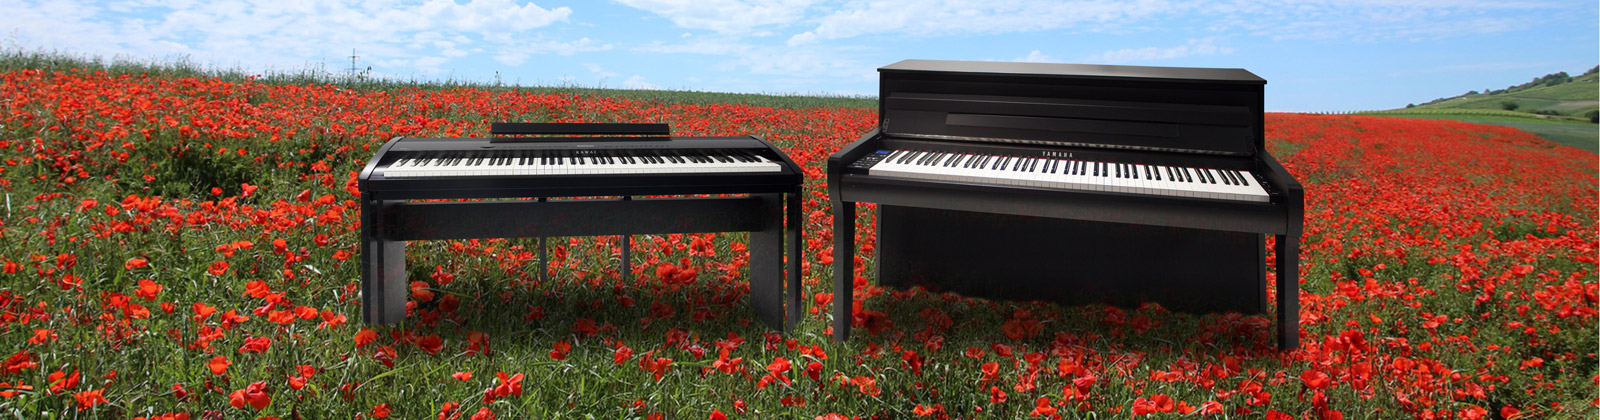 Digital-Pianos - für jeden Anspruch und jedes Budget